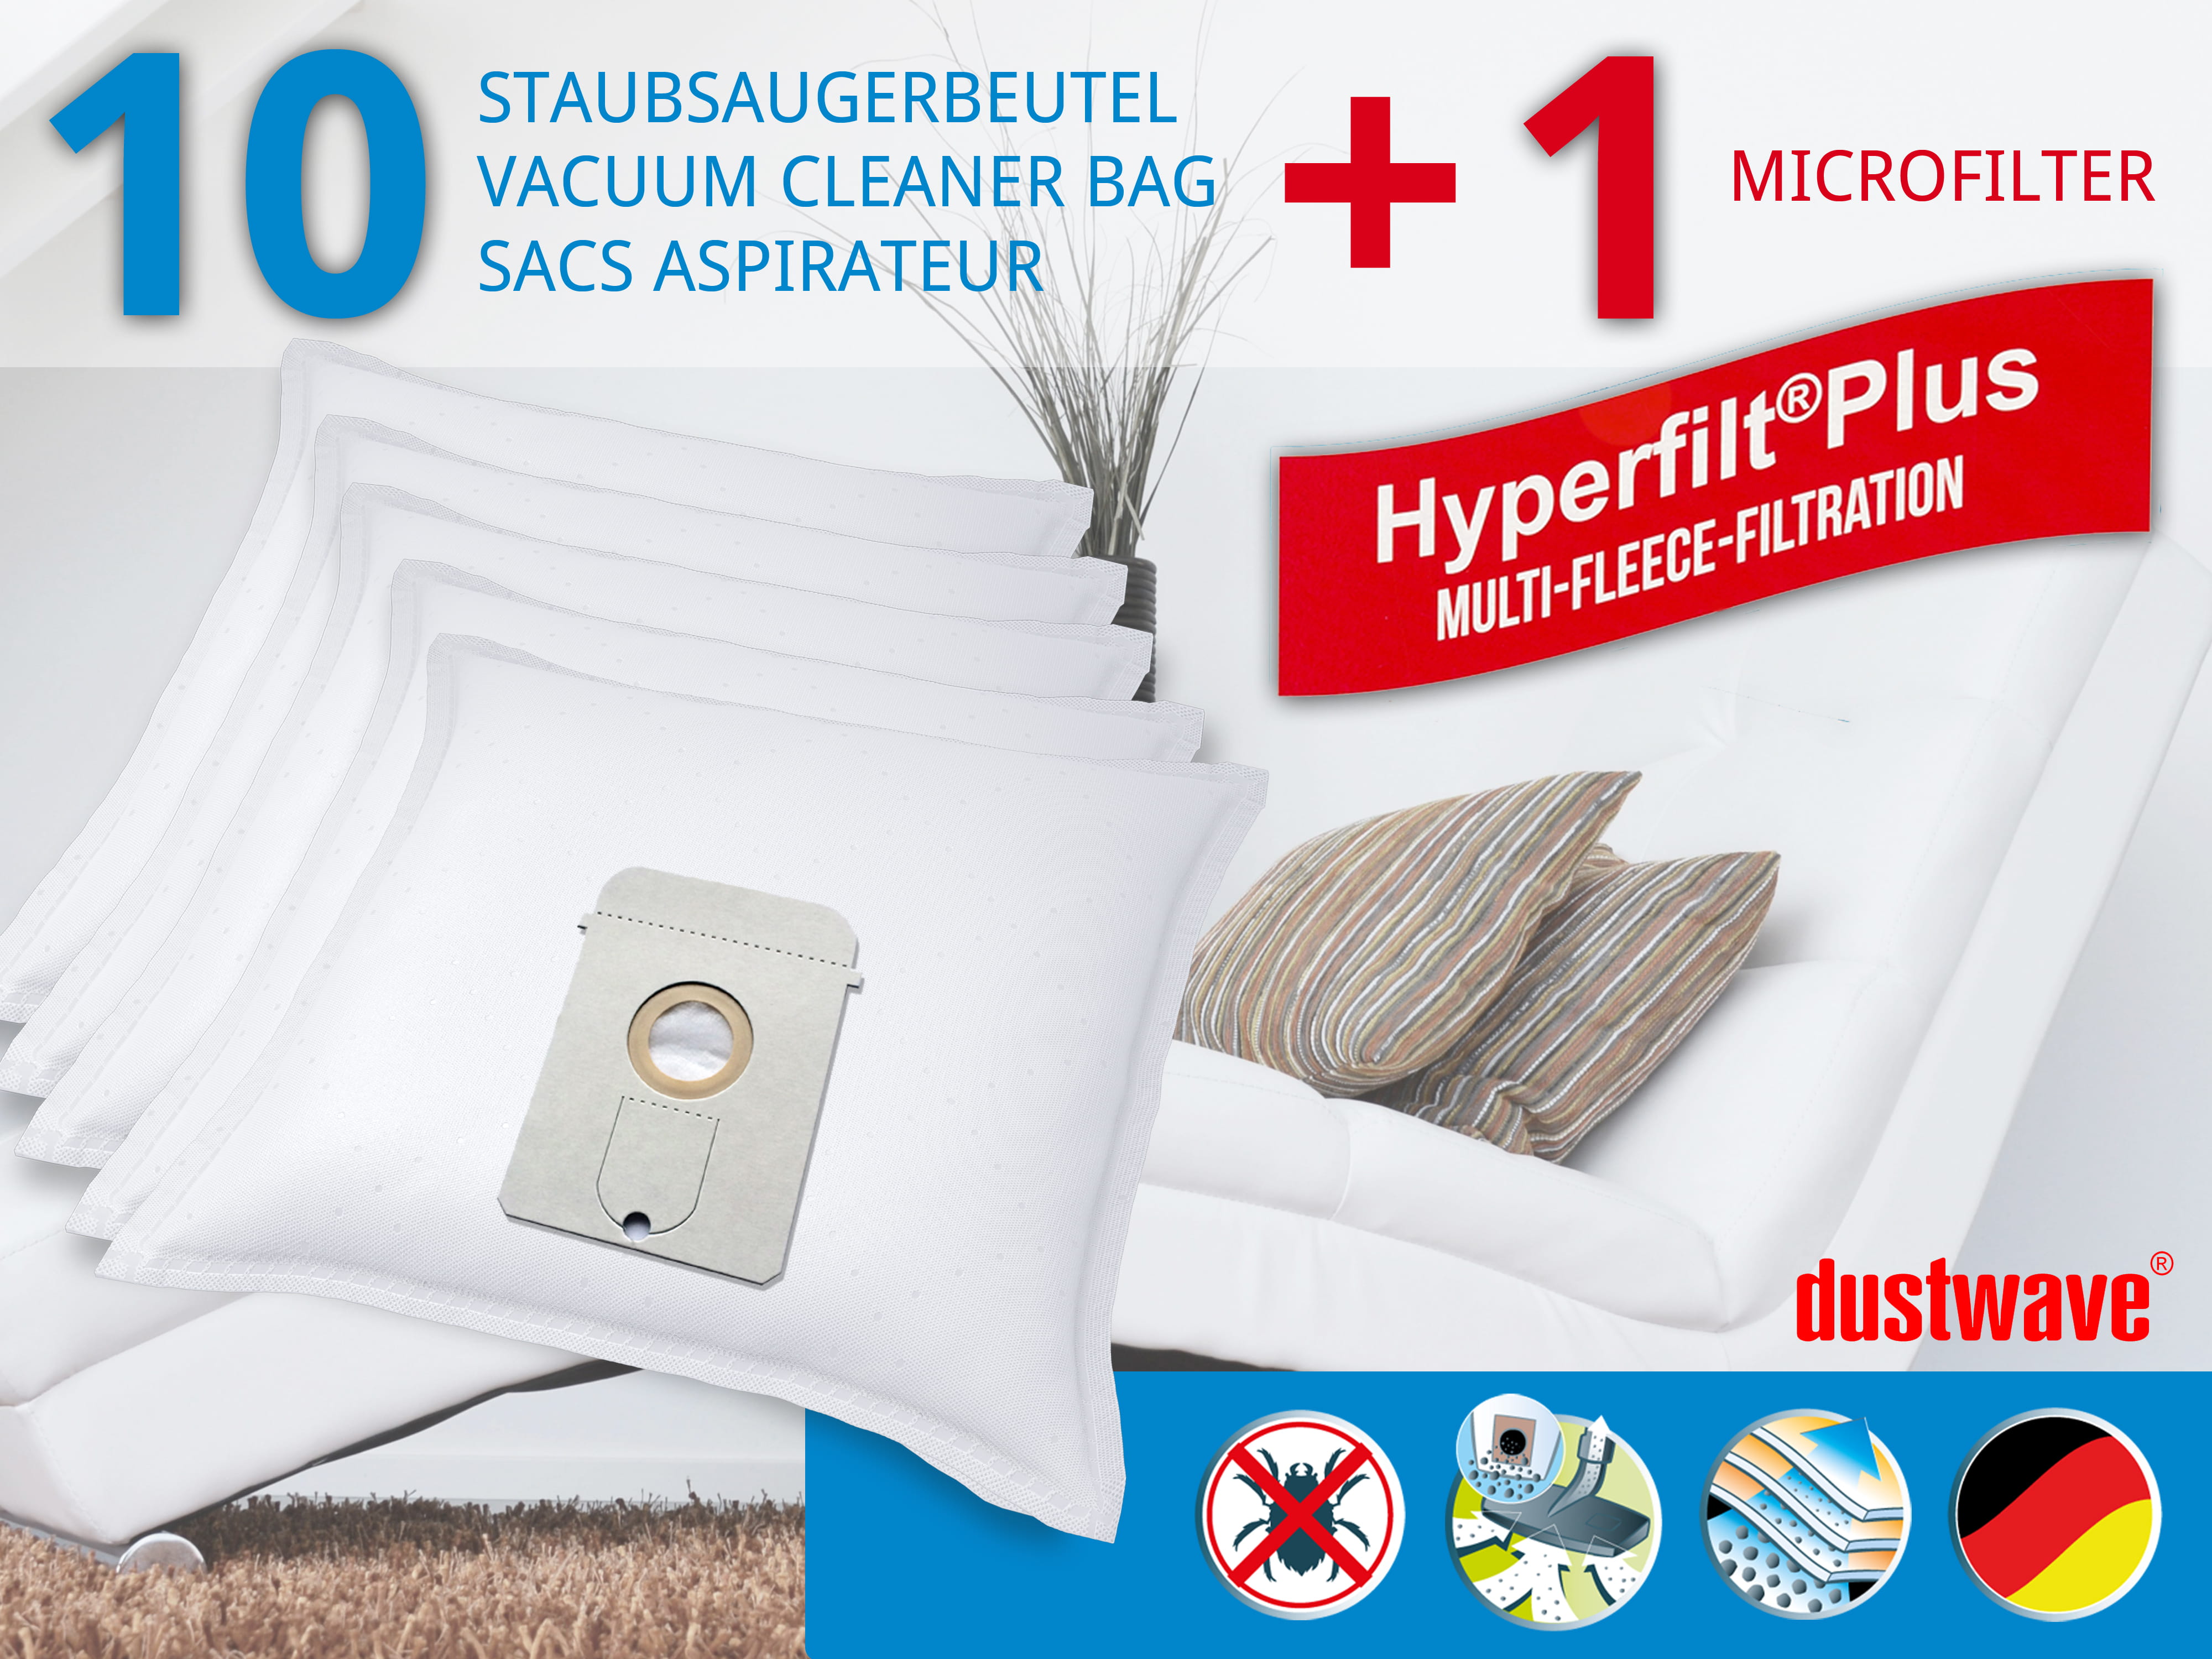 Dustwave® 10 Staubsaugerbeutel für AEG Vampyr Exquisit 1310 TB - hocheffizient, mehrlagiges Mikrovlies mit Hygieneverschluss - Made in Germany